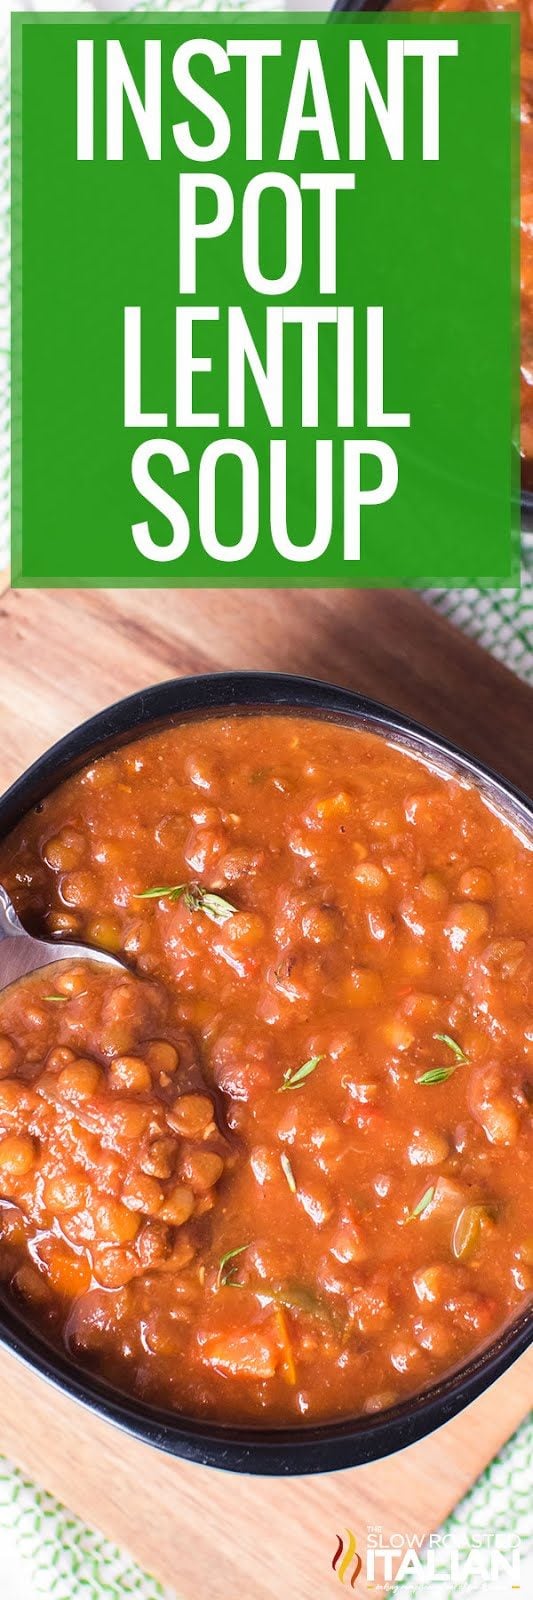 instant-pot-lentil-soup-pin-8774724